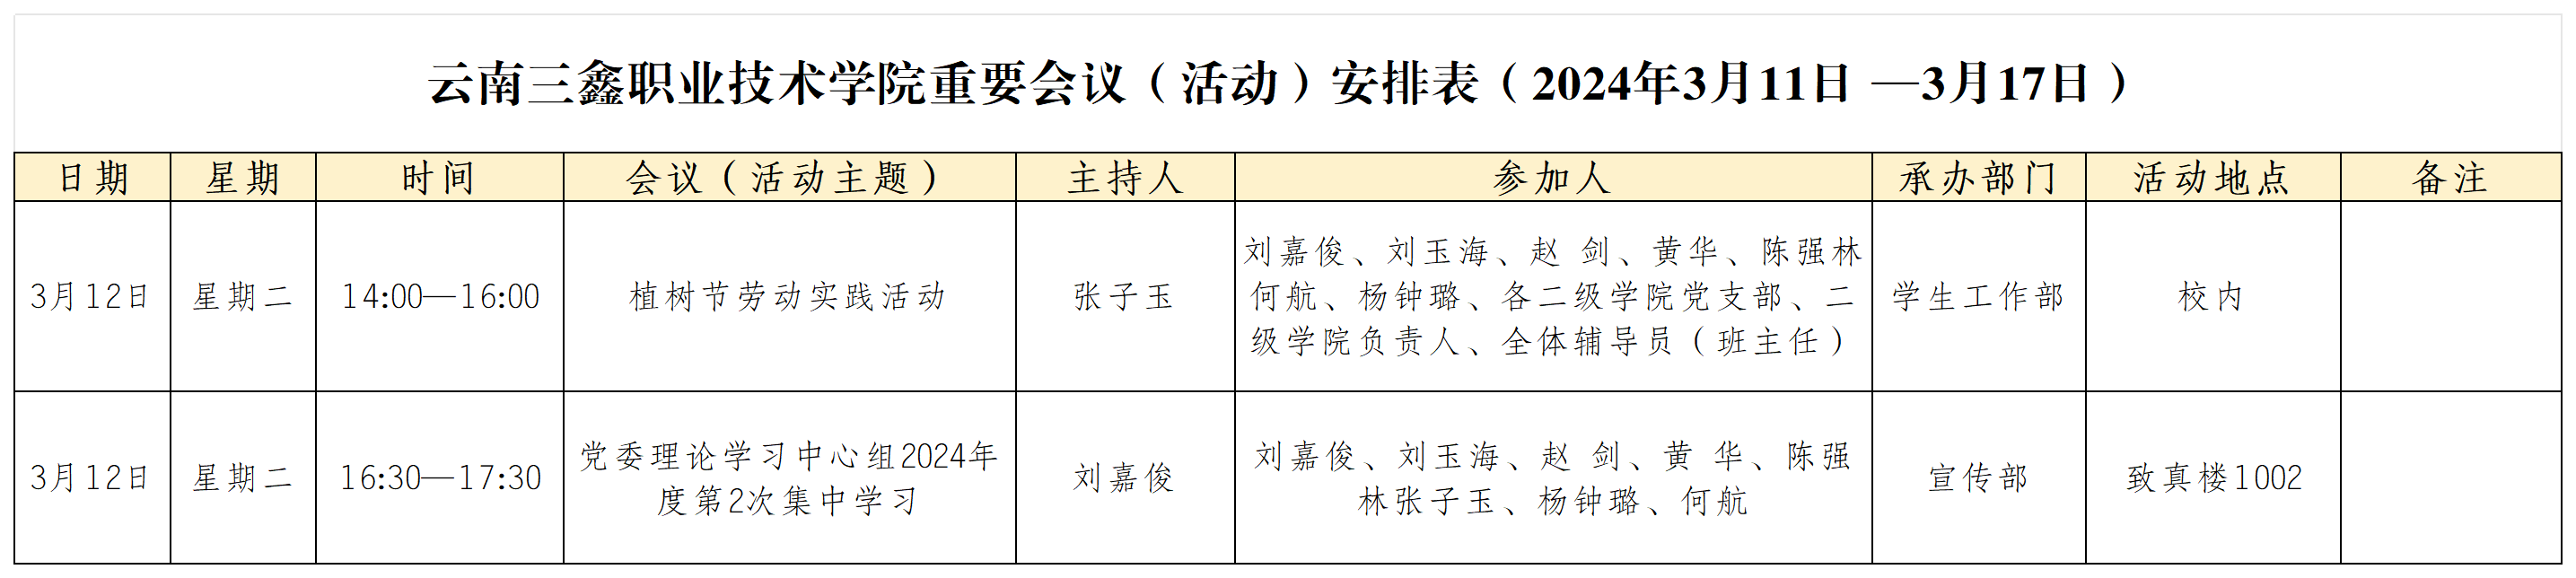 云南三鑫职业技术学院重要会议（活动）安排表（2024年3月11日 —3月17日）